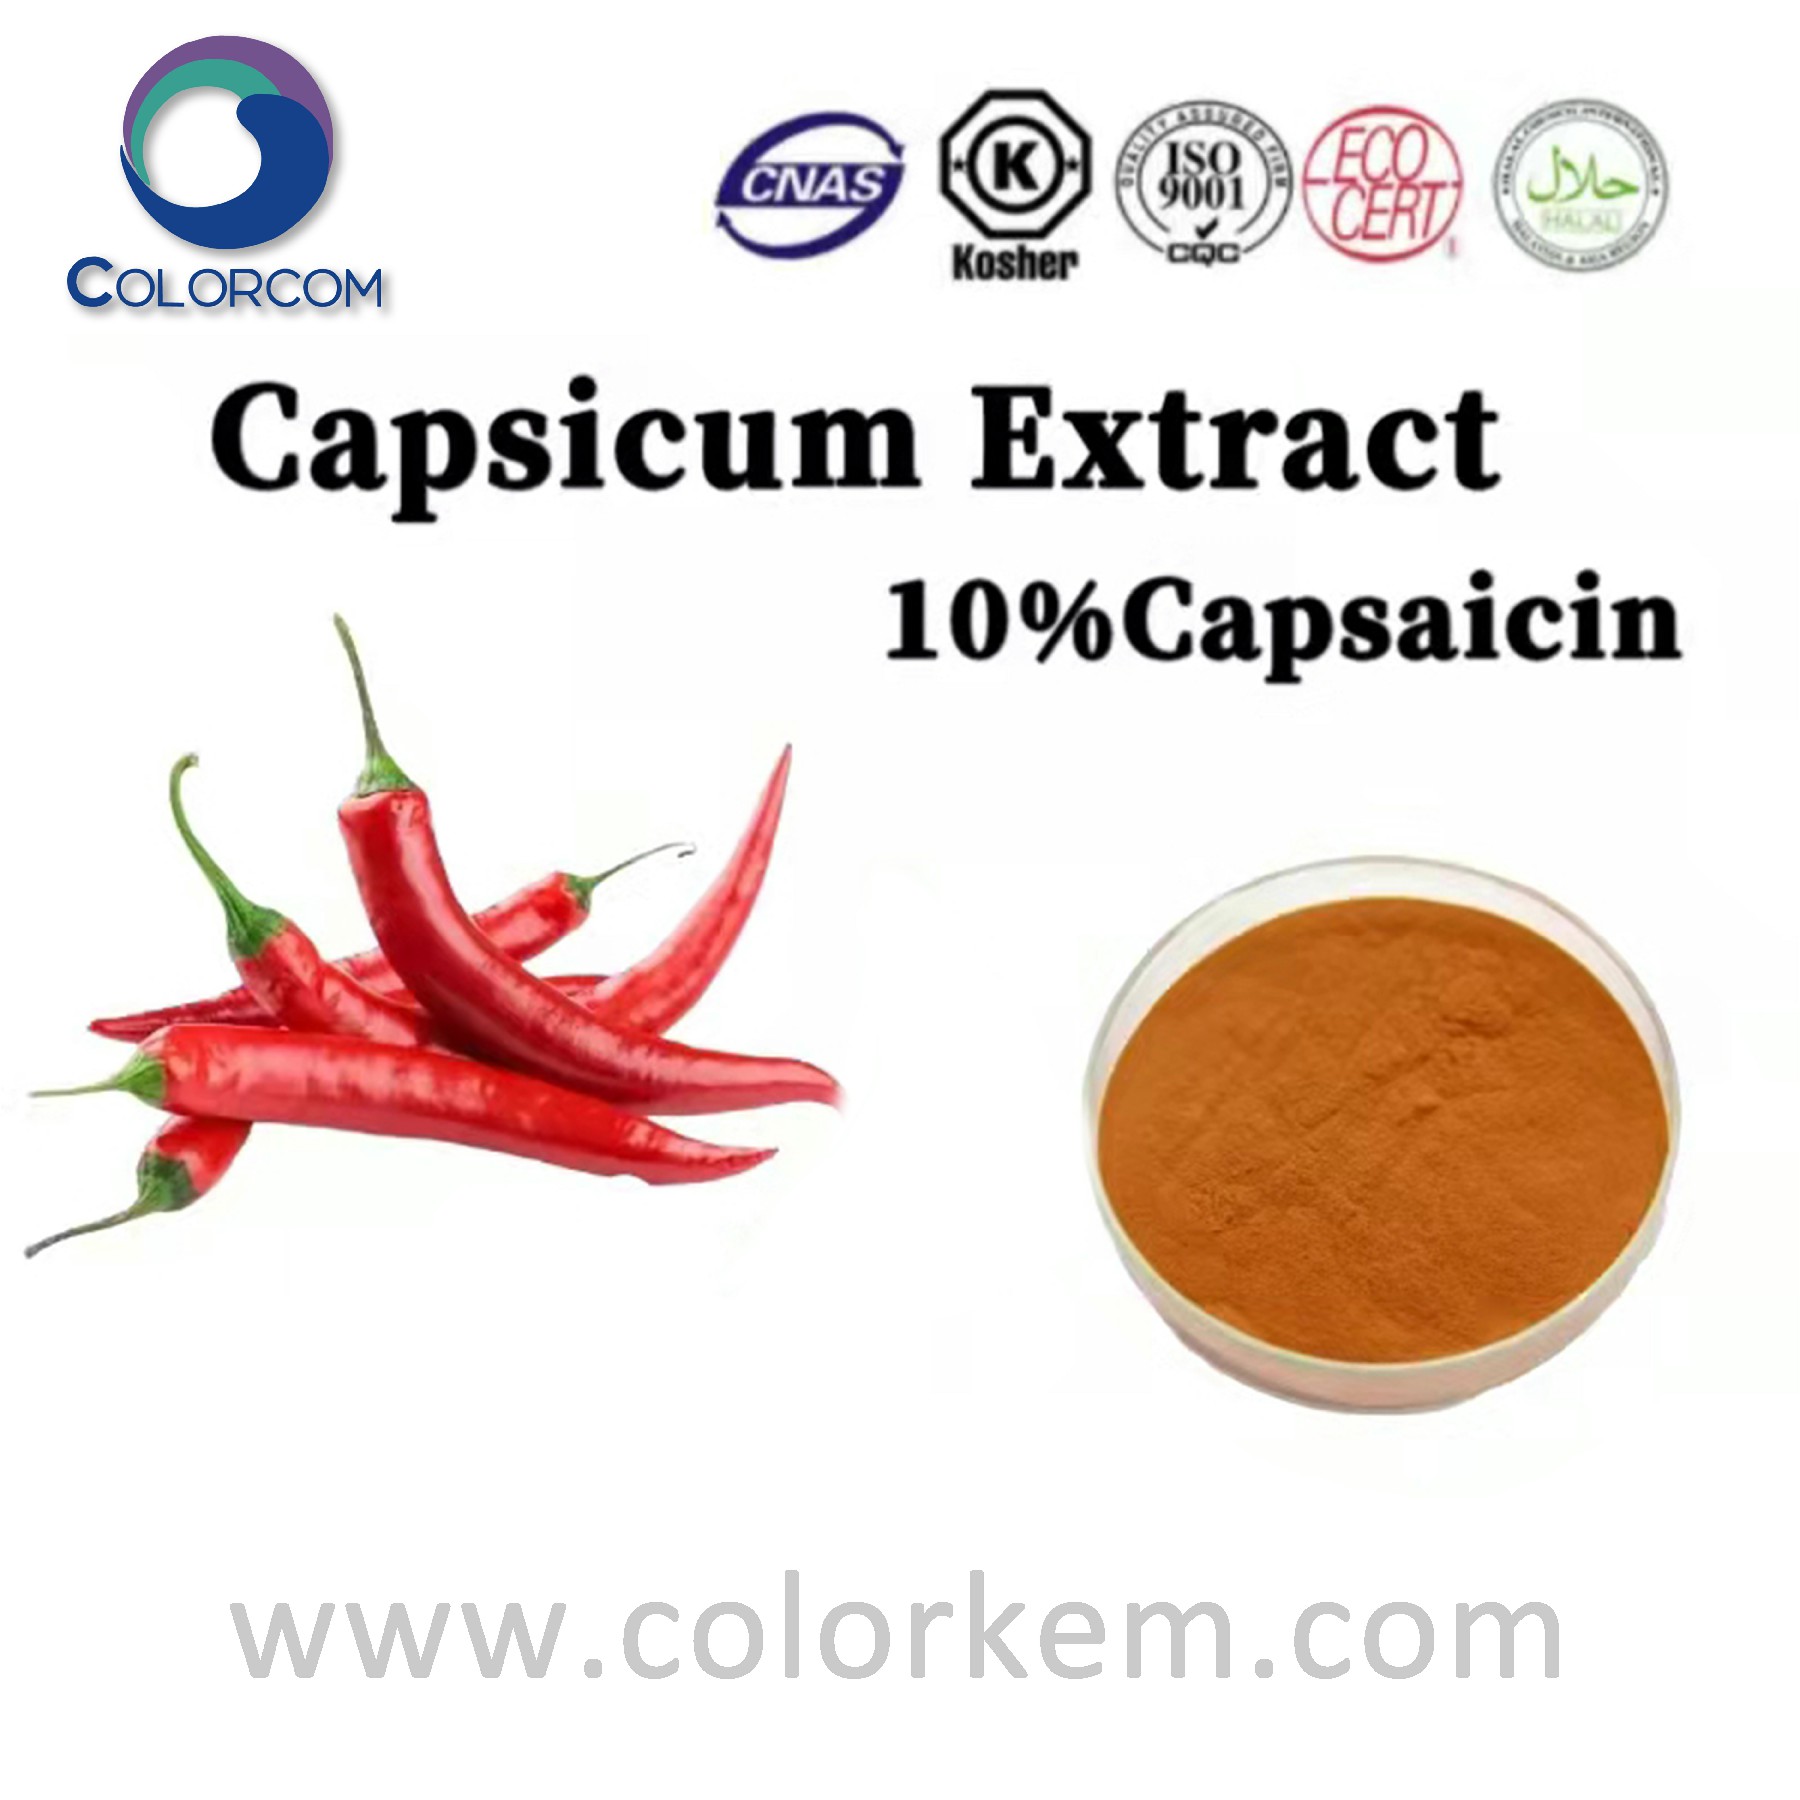 Capsicum extract Capsaicin